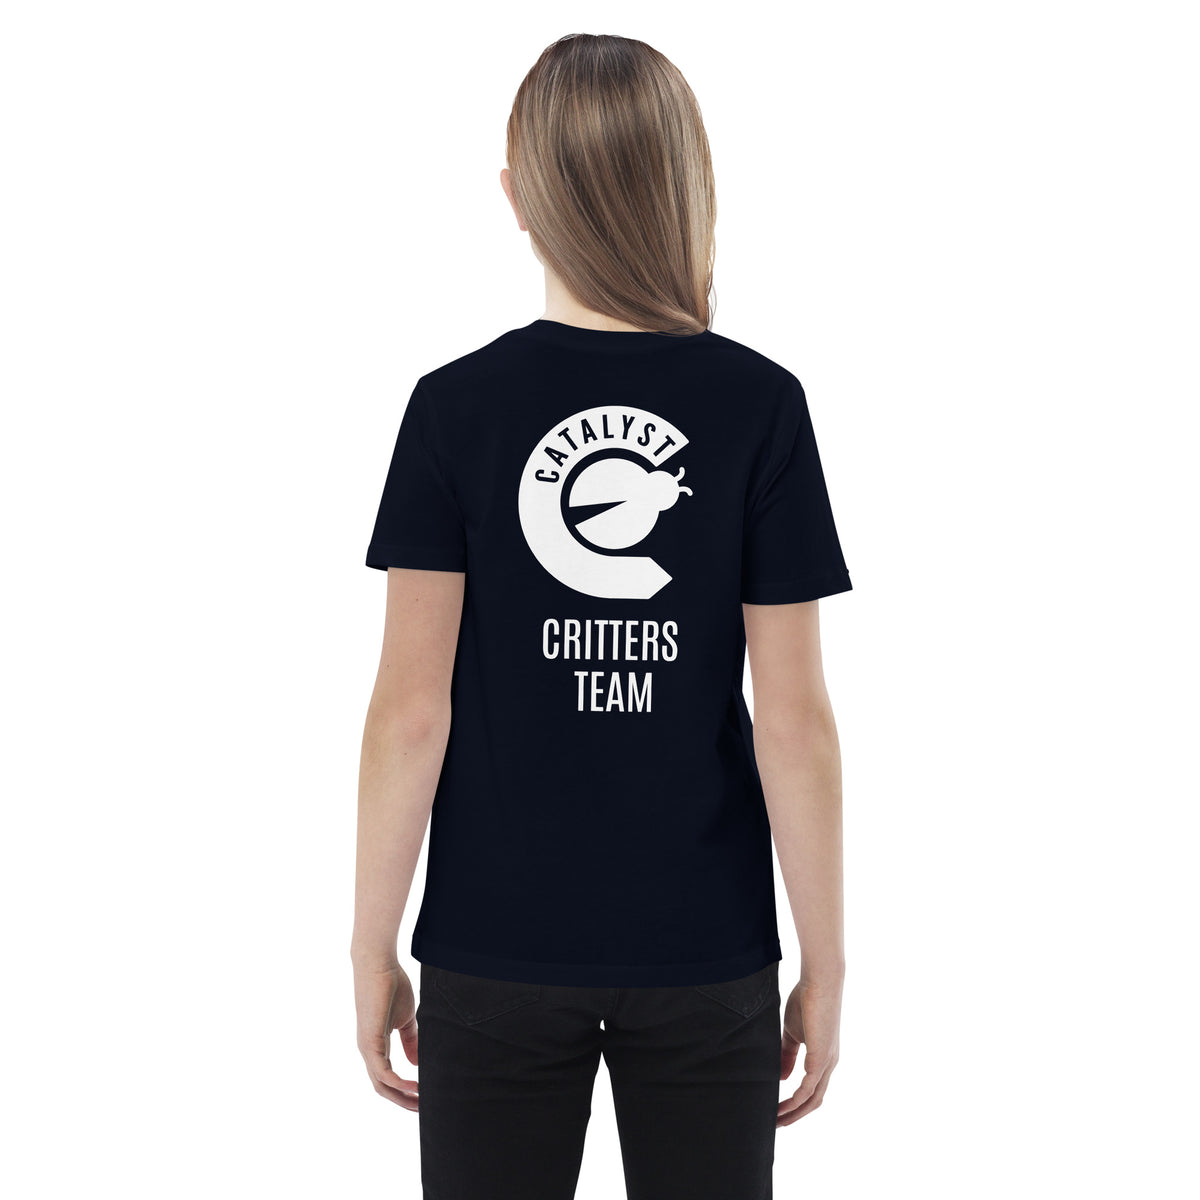 Catalyst Critters Team T-Shirt